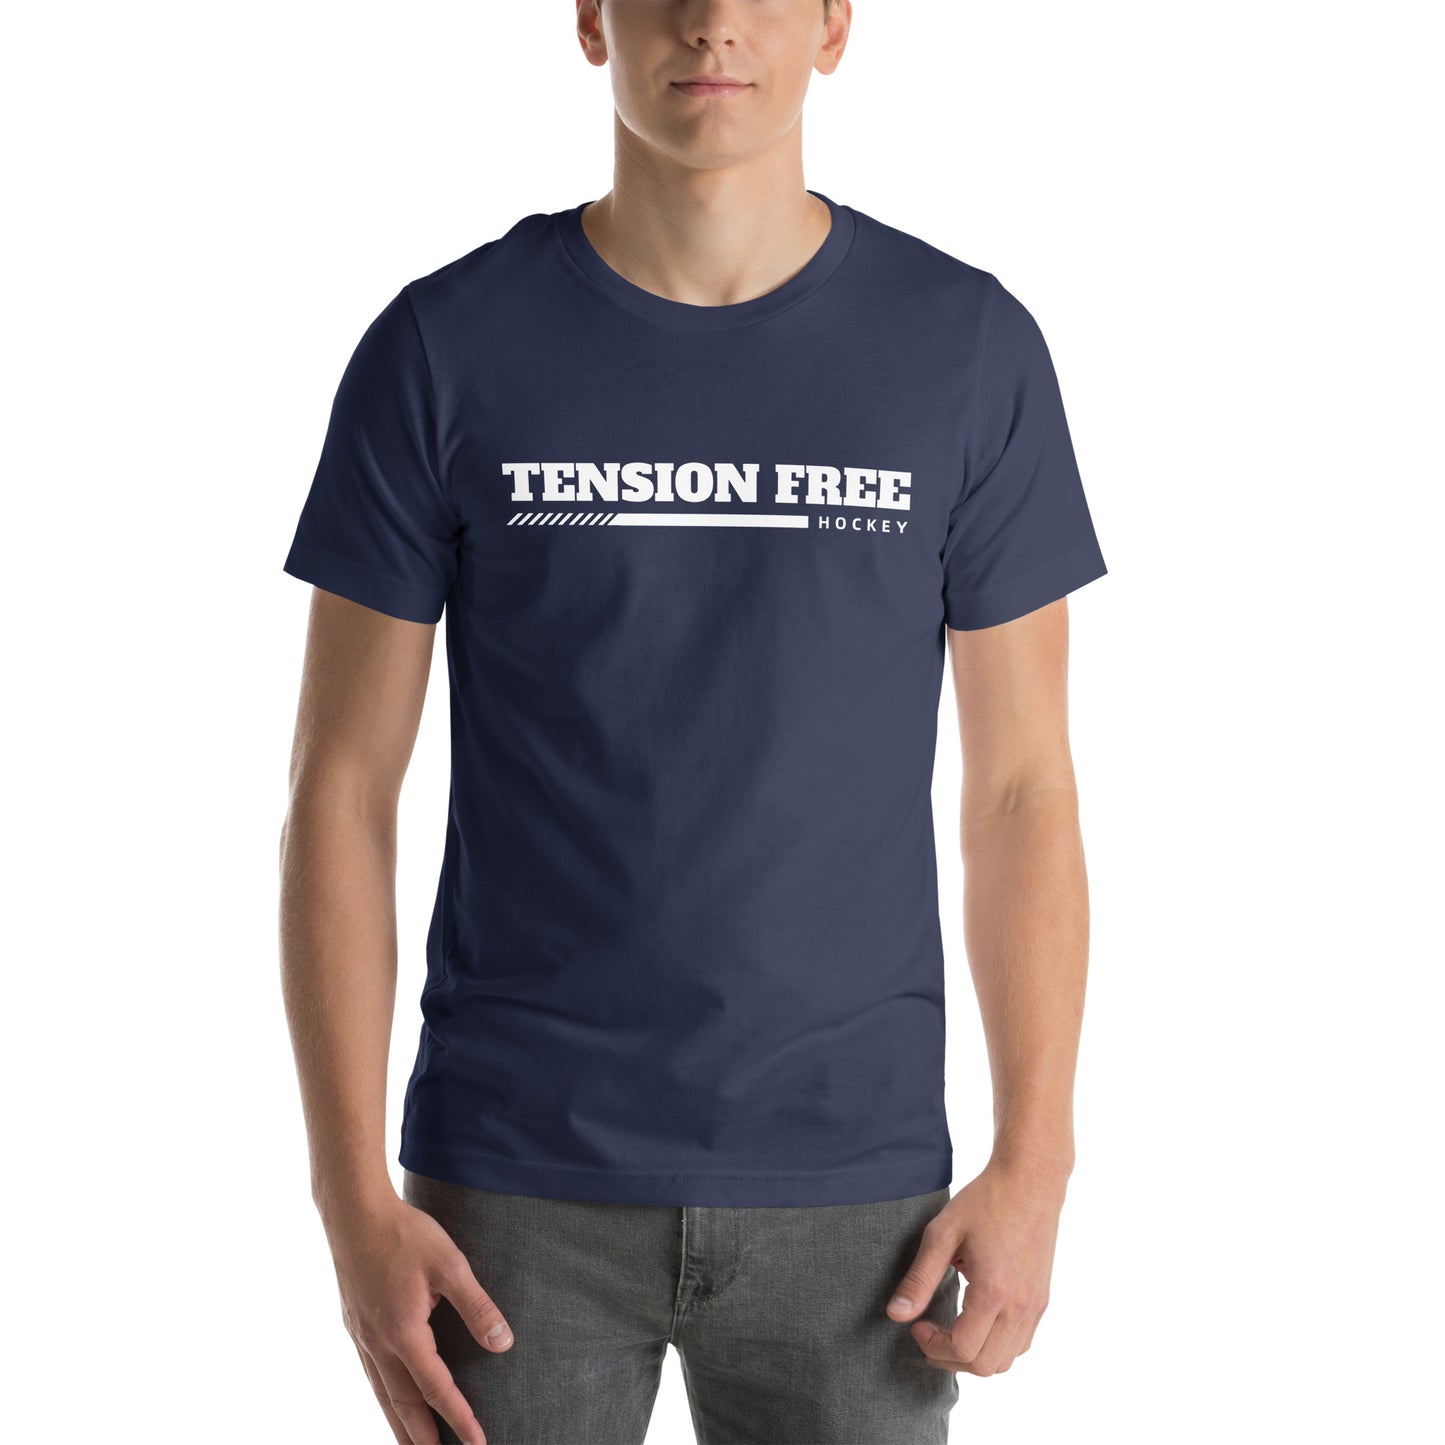 Tension Free Hockey - Unisex T-Shirt